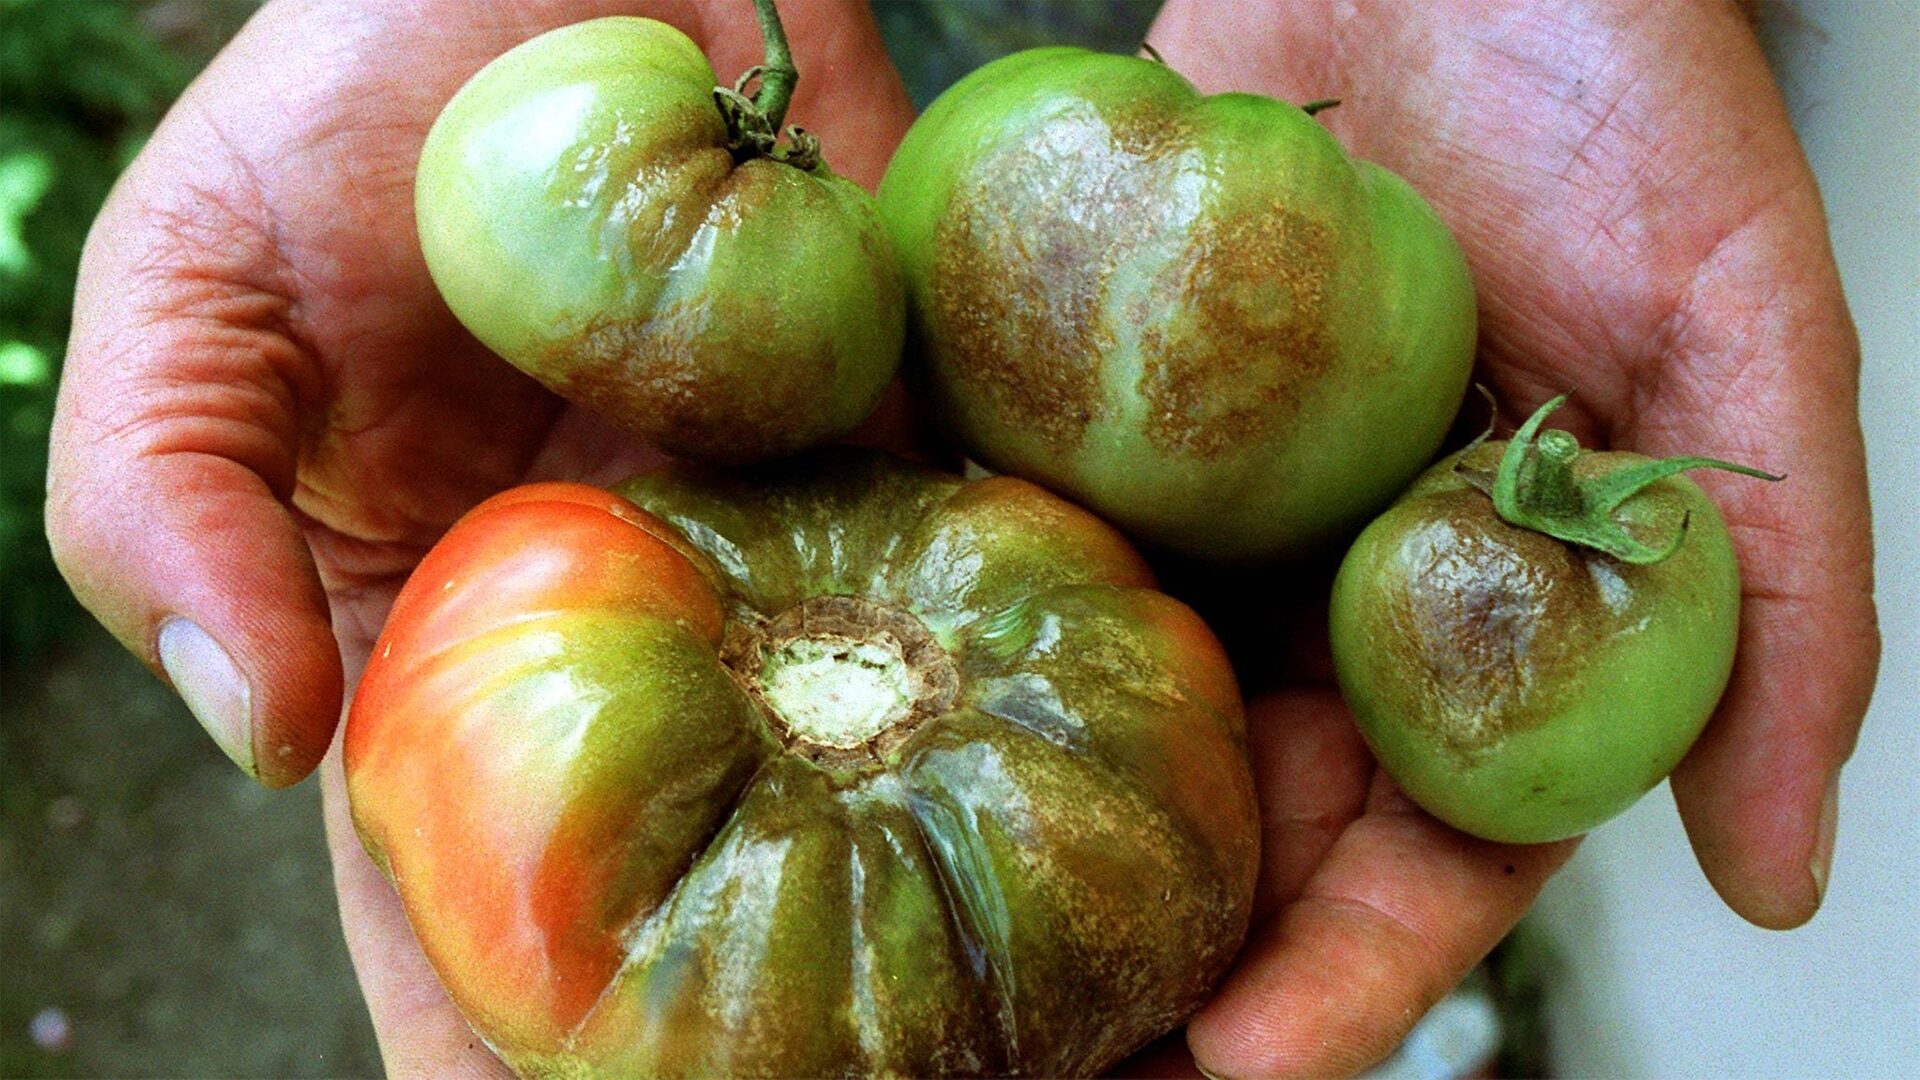 Achtung: Aschestaub – warum Graufäule Tomaten befällt und wie man damit umgeht